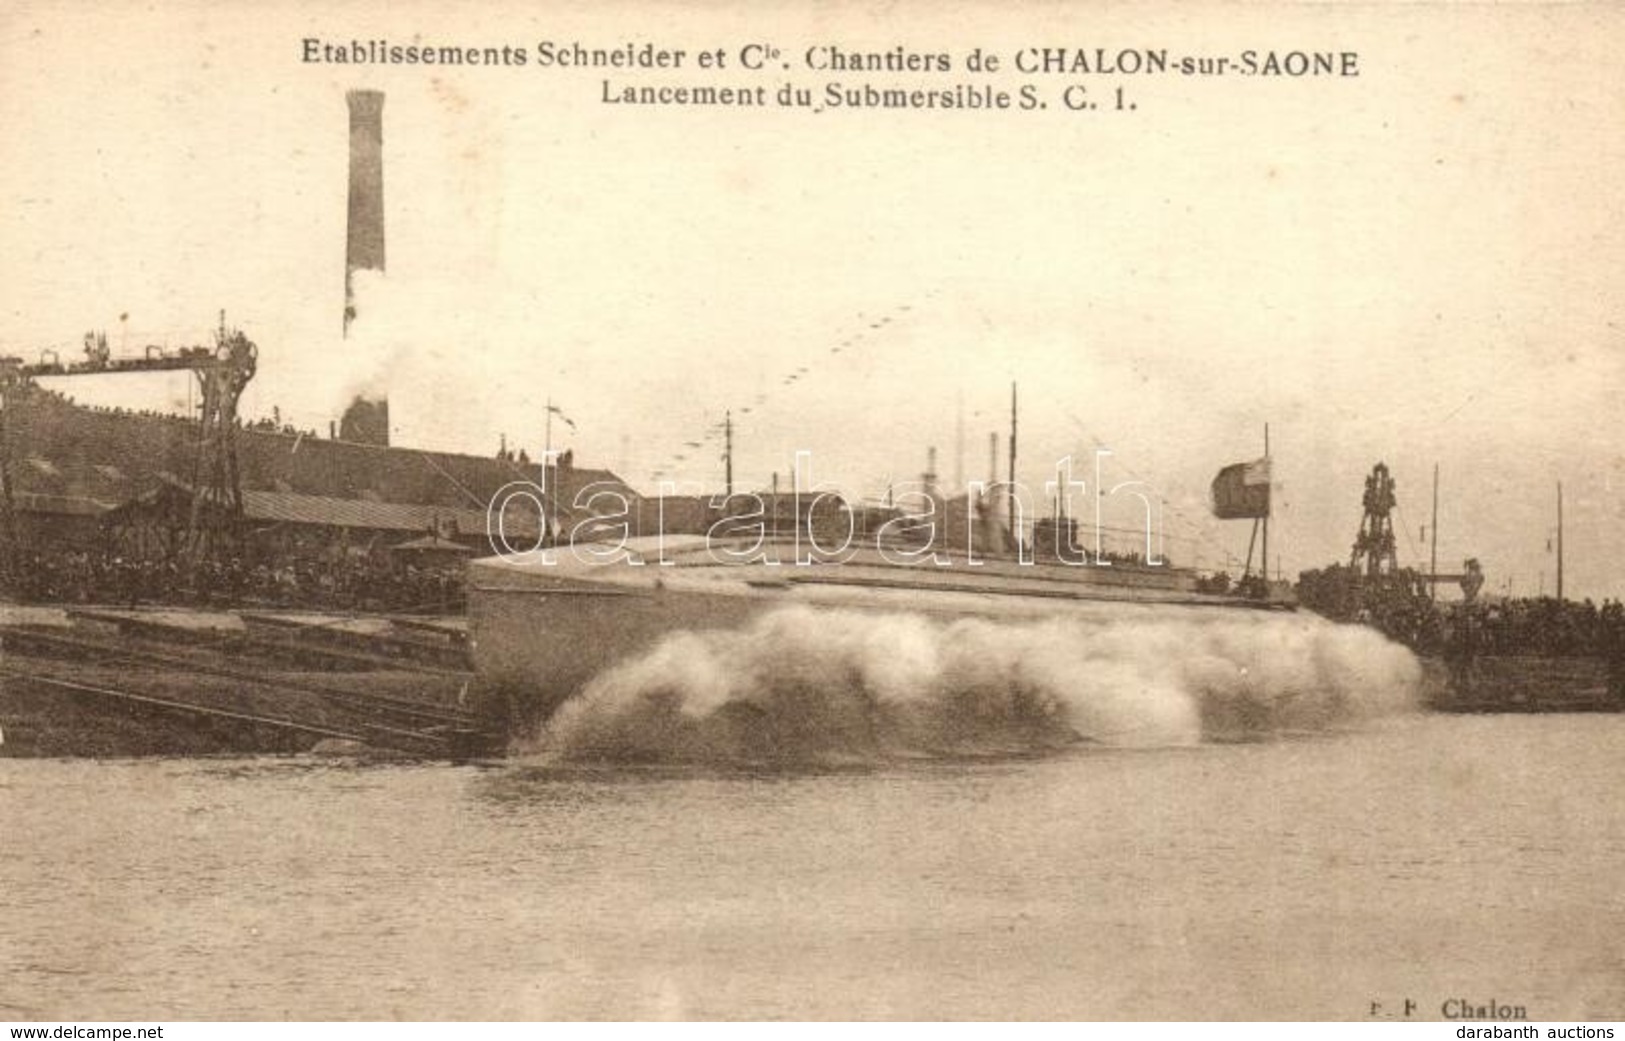 * T2 Chalon-sur-Saone, Etablissements Schneider Et Cie, Lancement Du Submersible S.C.I. / Marine Nationale. French Navy  - Non Classés